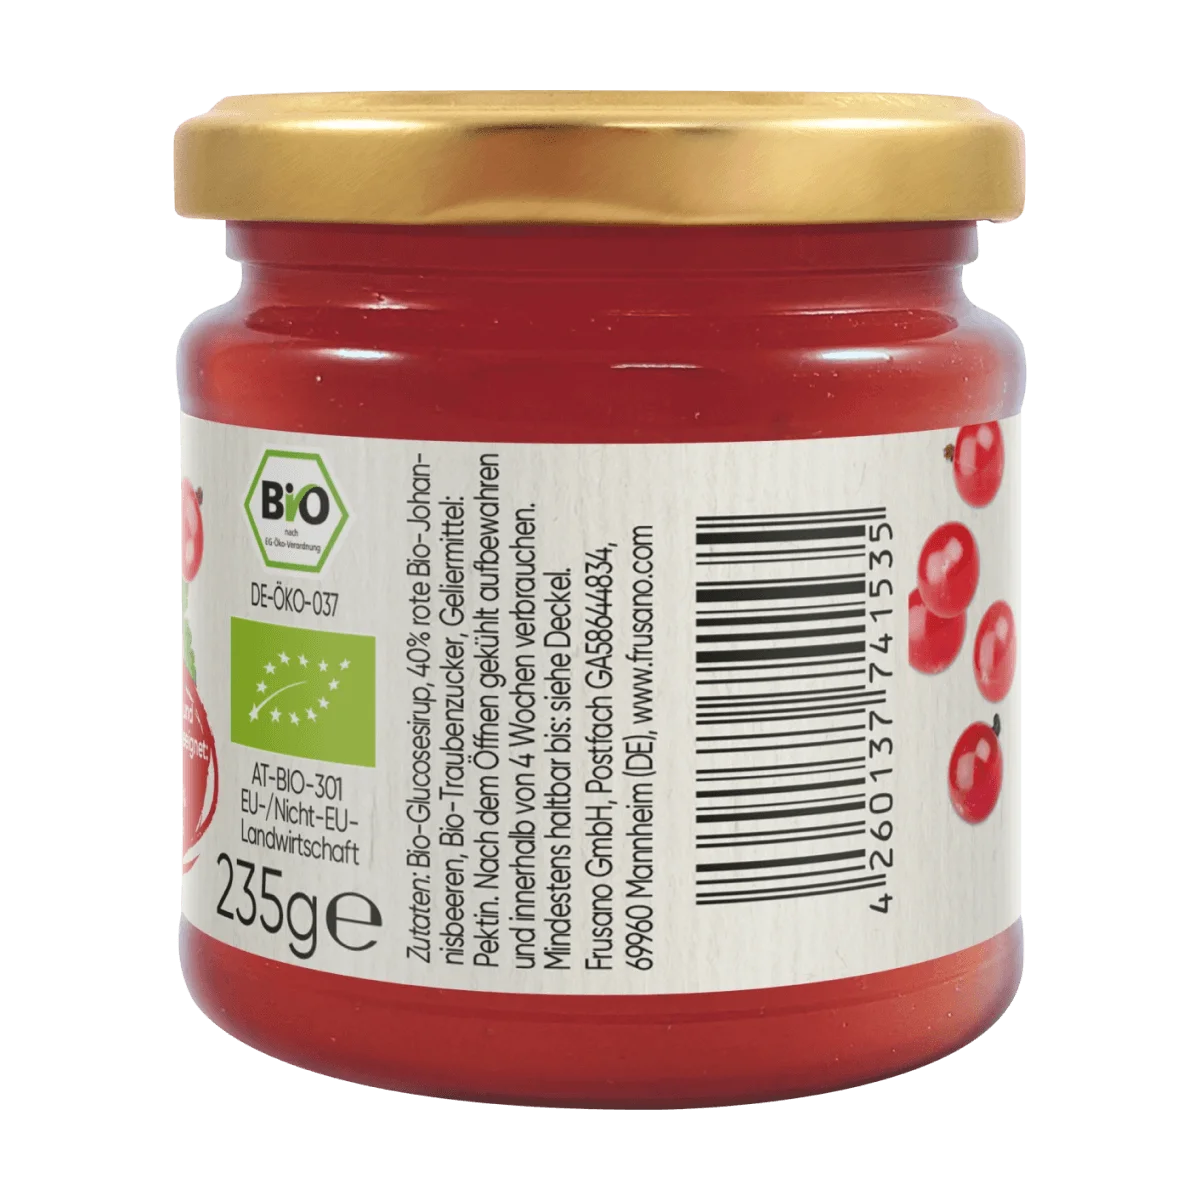 Frusano Fruchtaufstrich, Rote Johannisbeere, 235 g